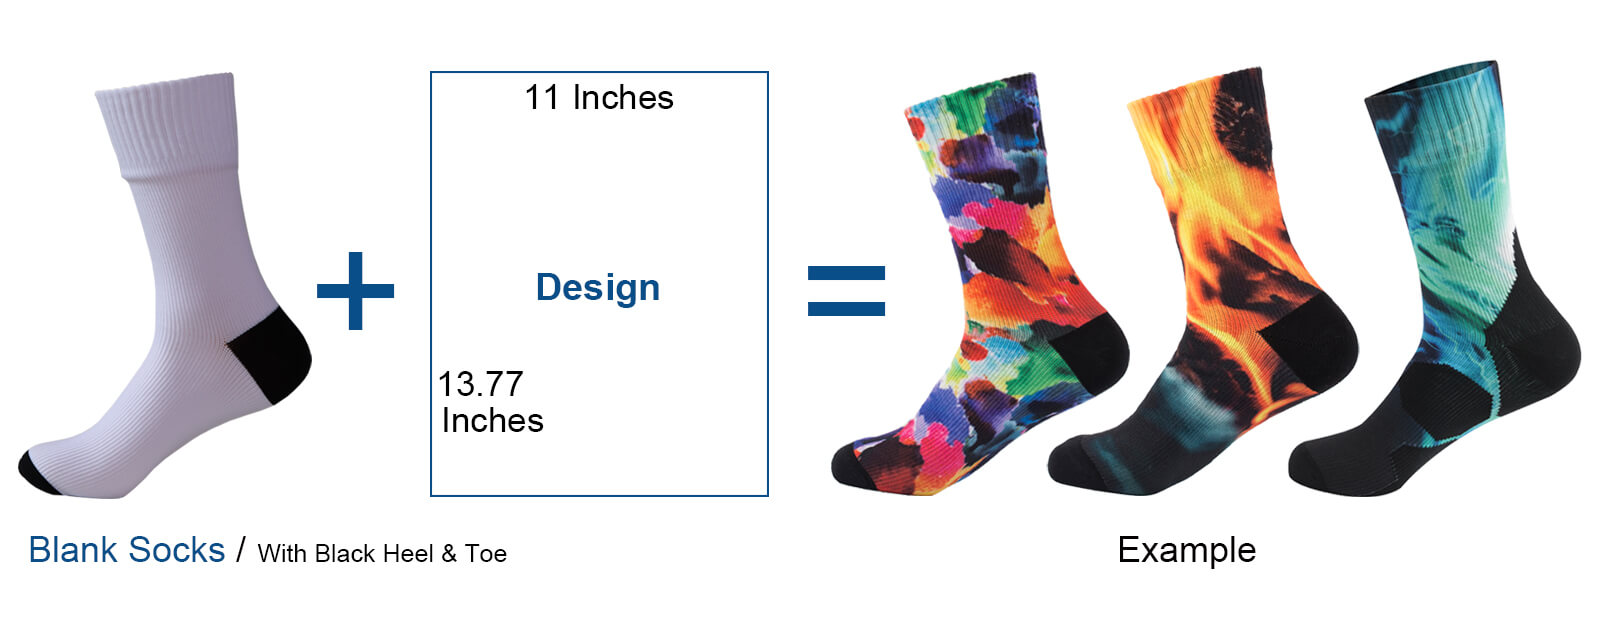 design waterproof socks